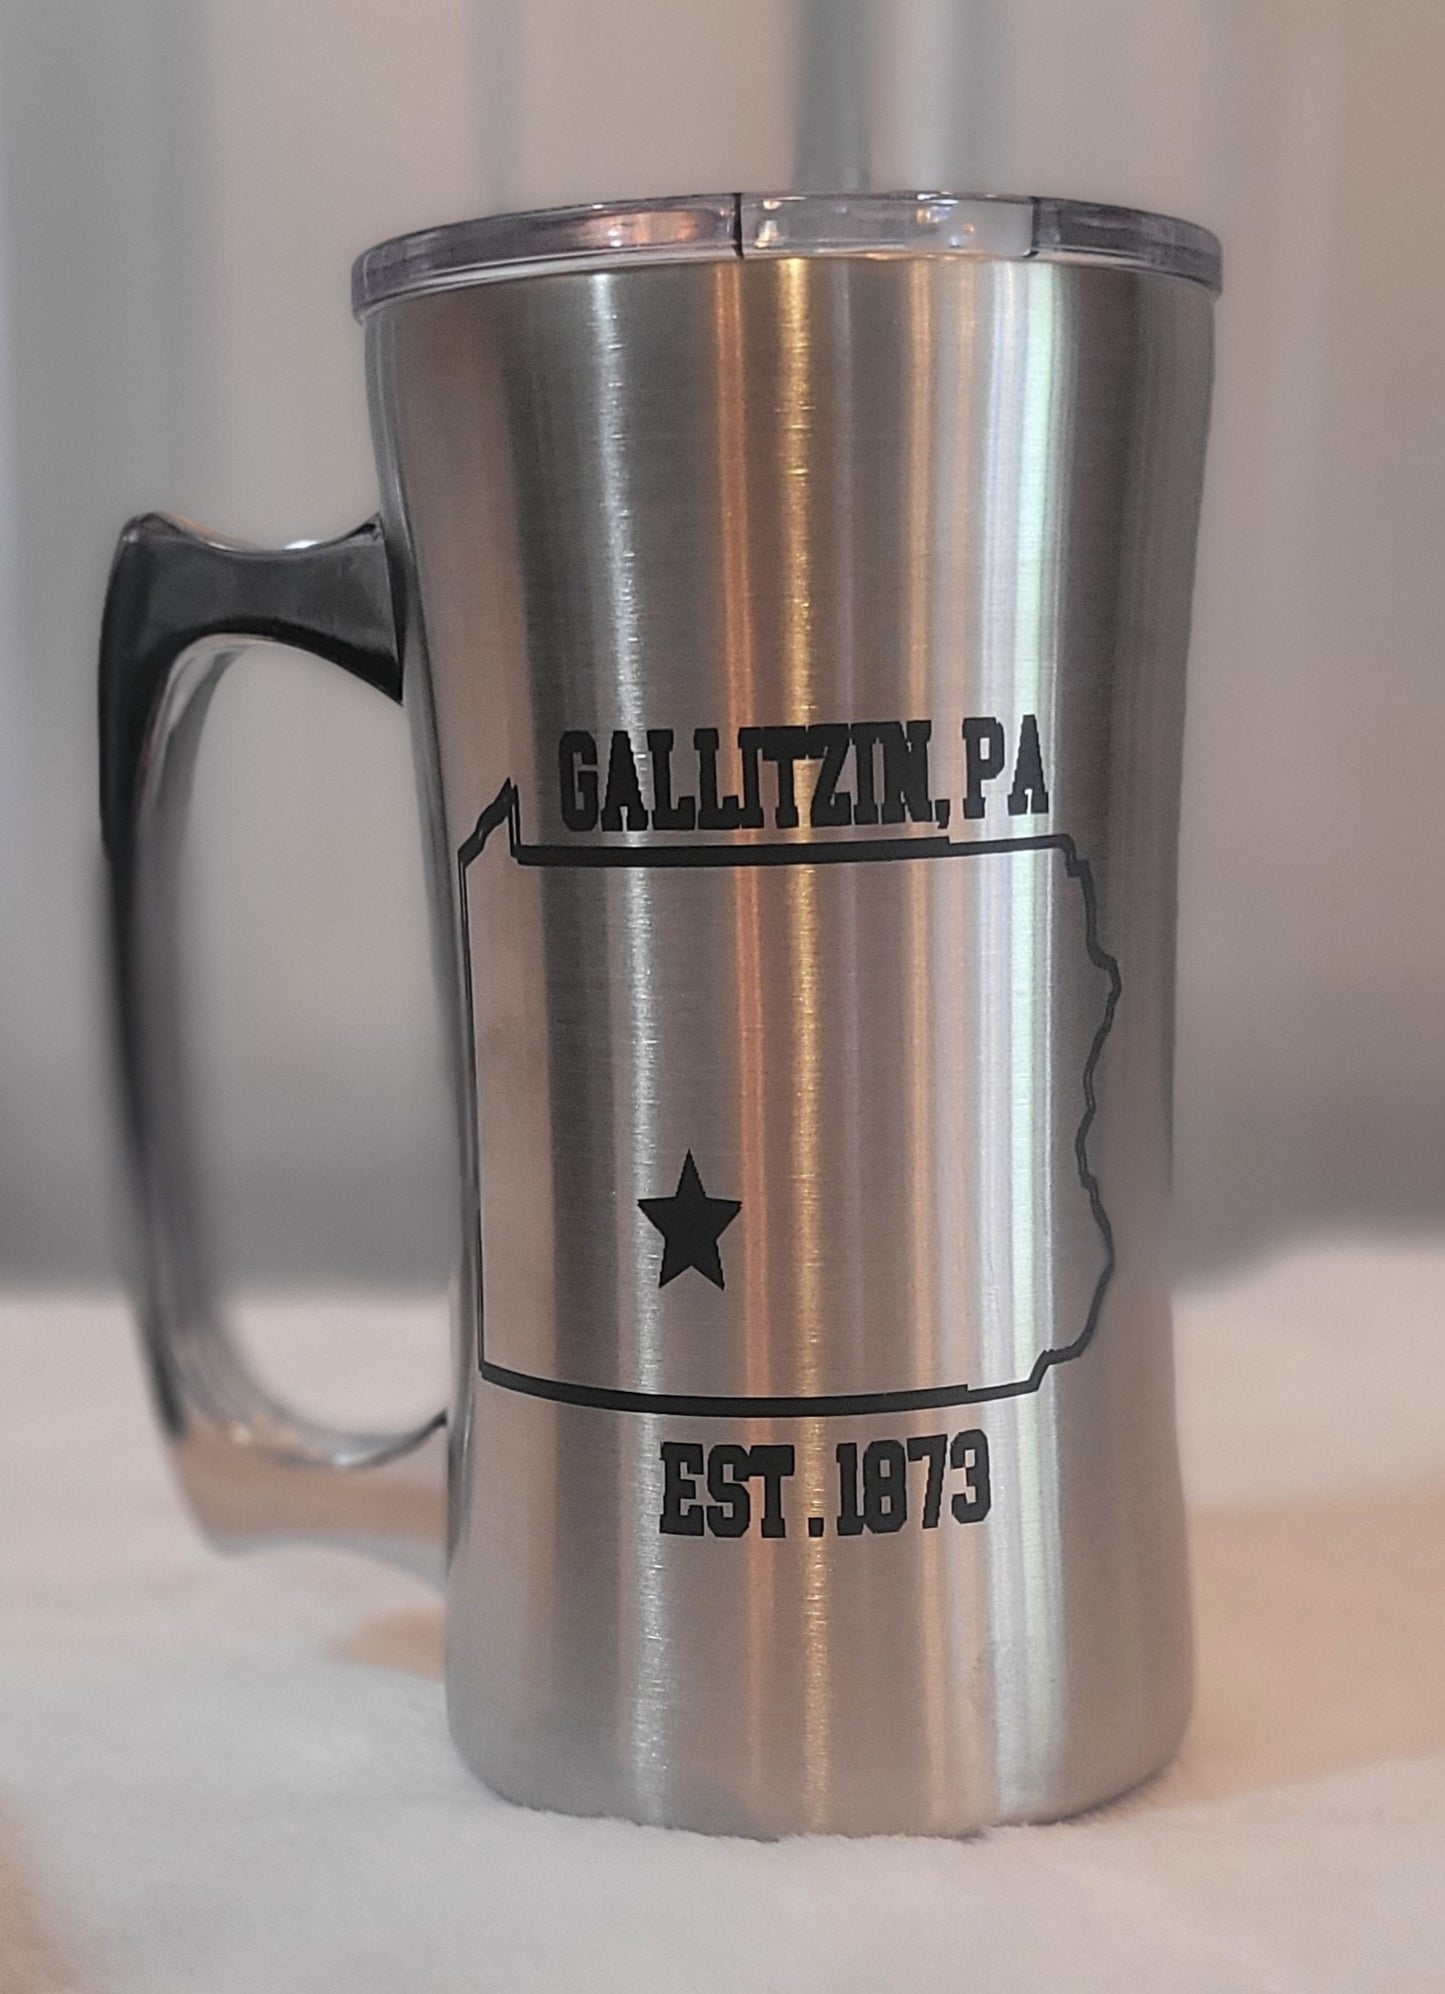 Laser engraved Stainless Steel Coffee Mug Gallitzin Pa 20oz